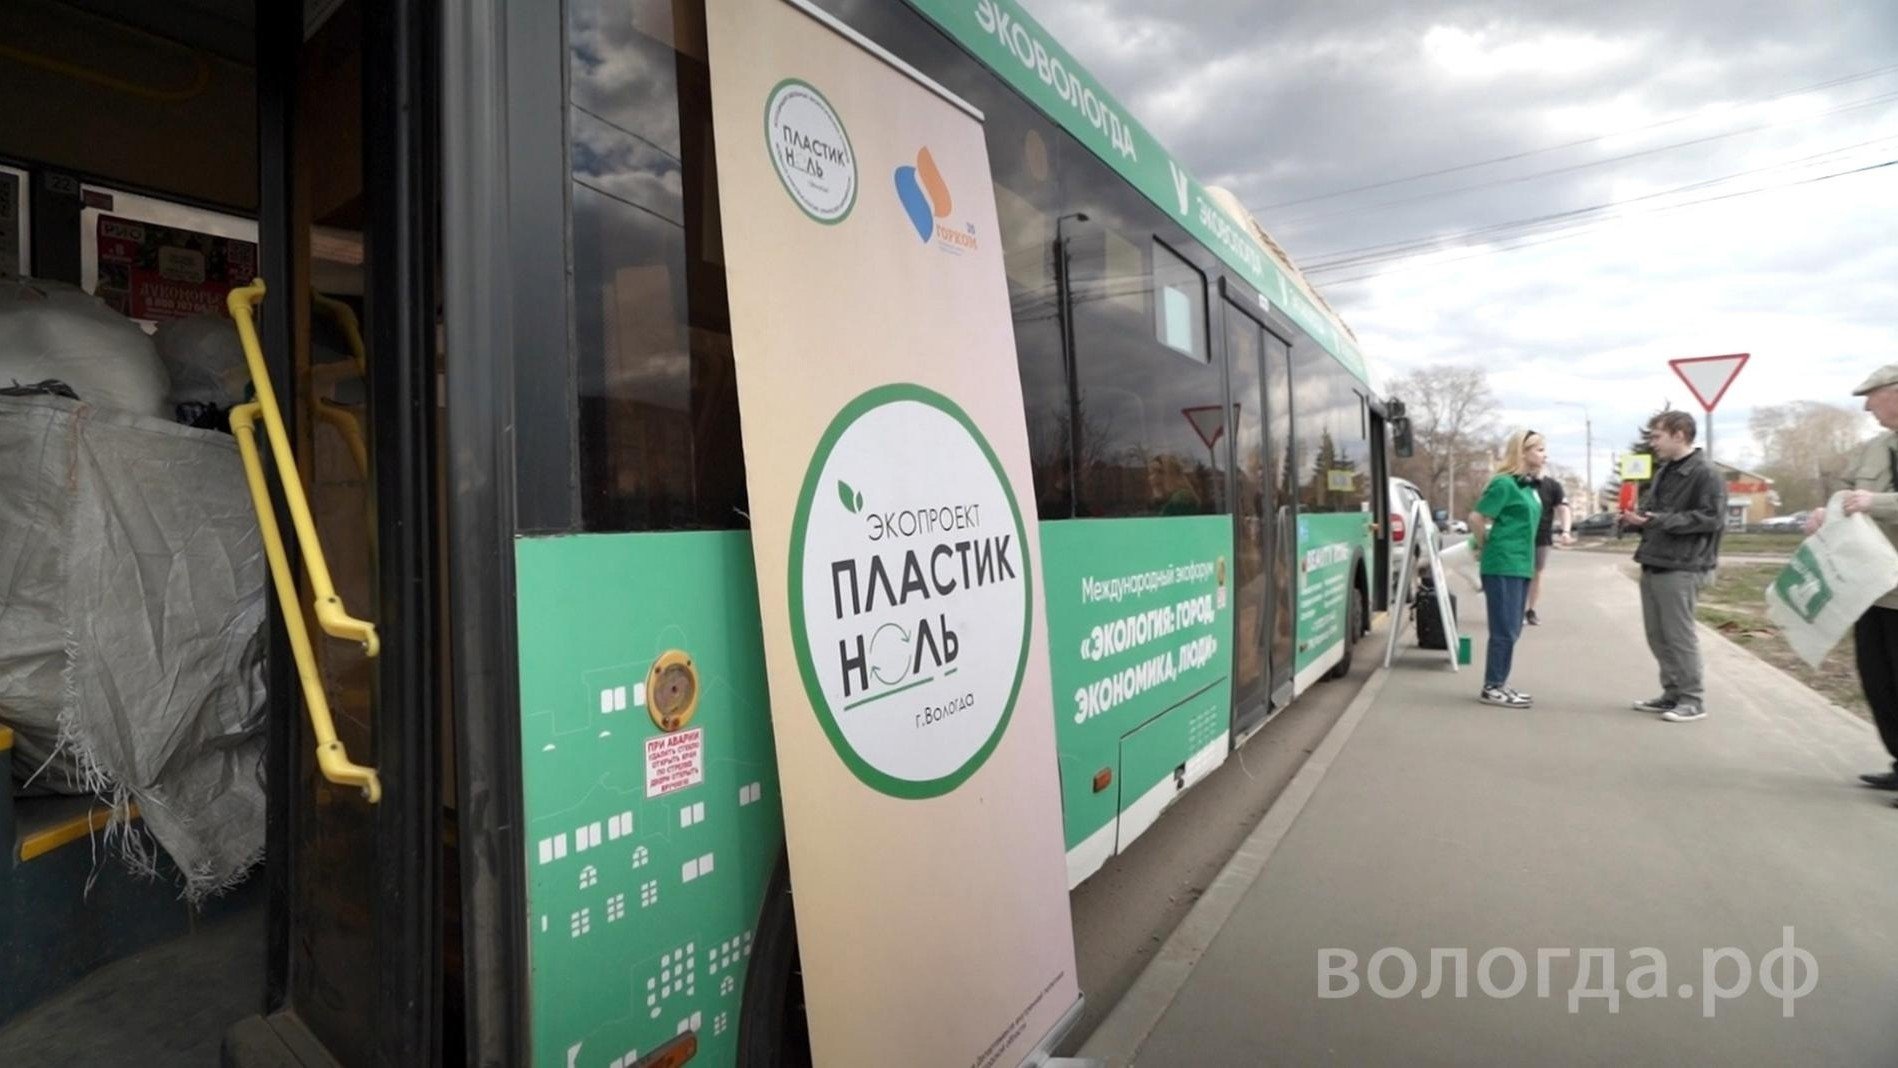 Экоавтобус будет курсировать по улицам Вологды